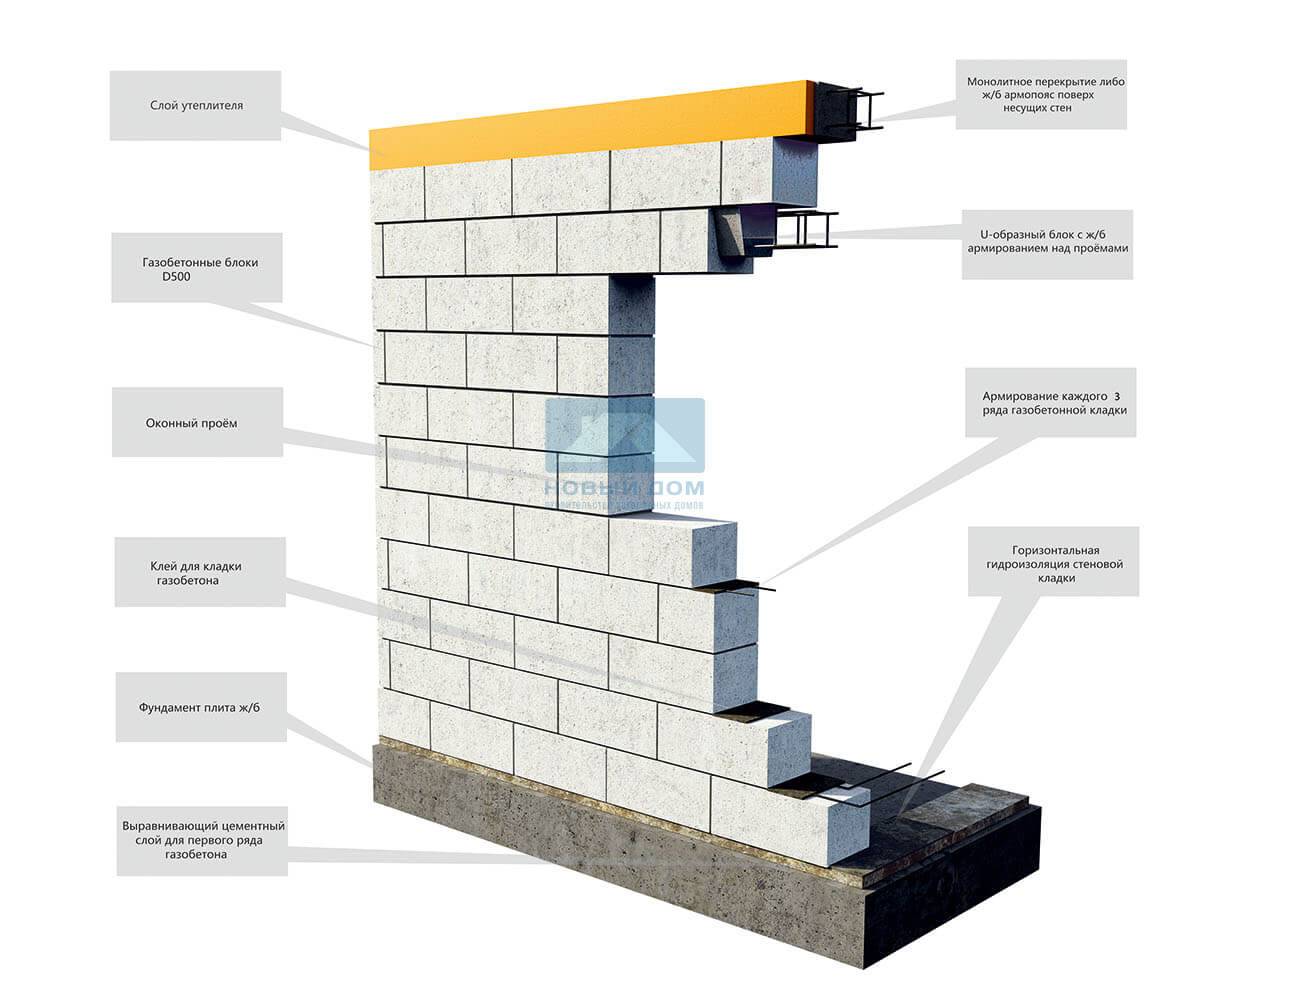 Строительство дома из газобетона своими руками поэтапно: инструкция, схемы (фото и видео)